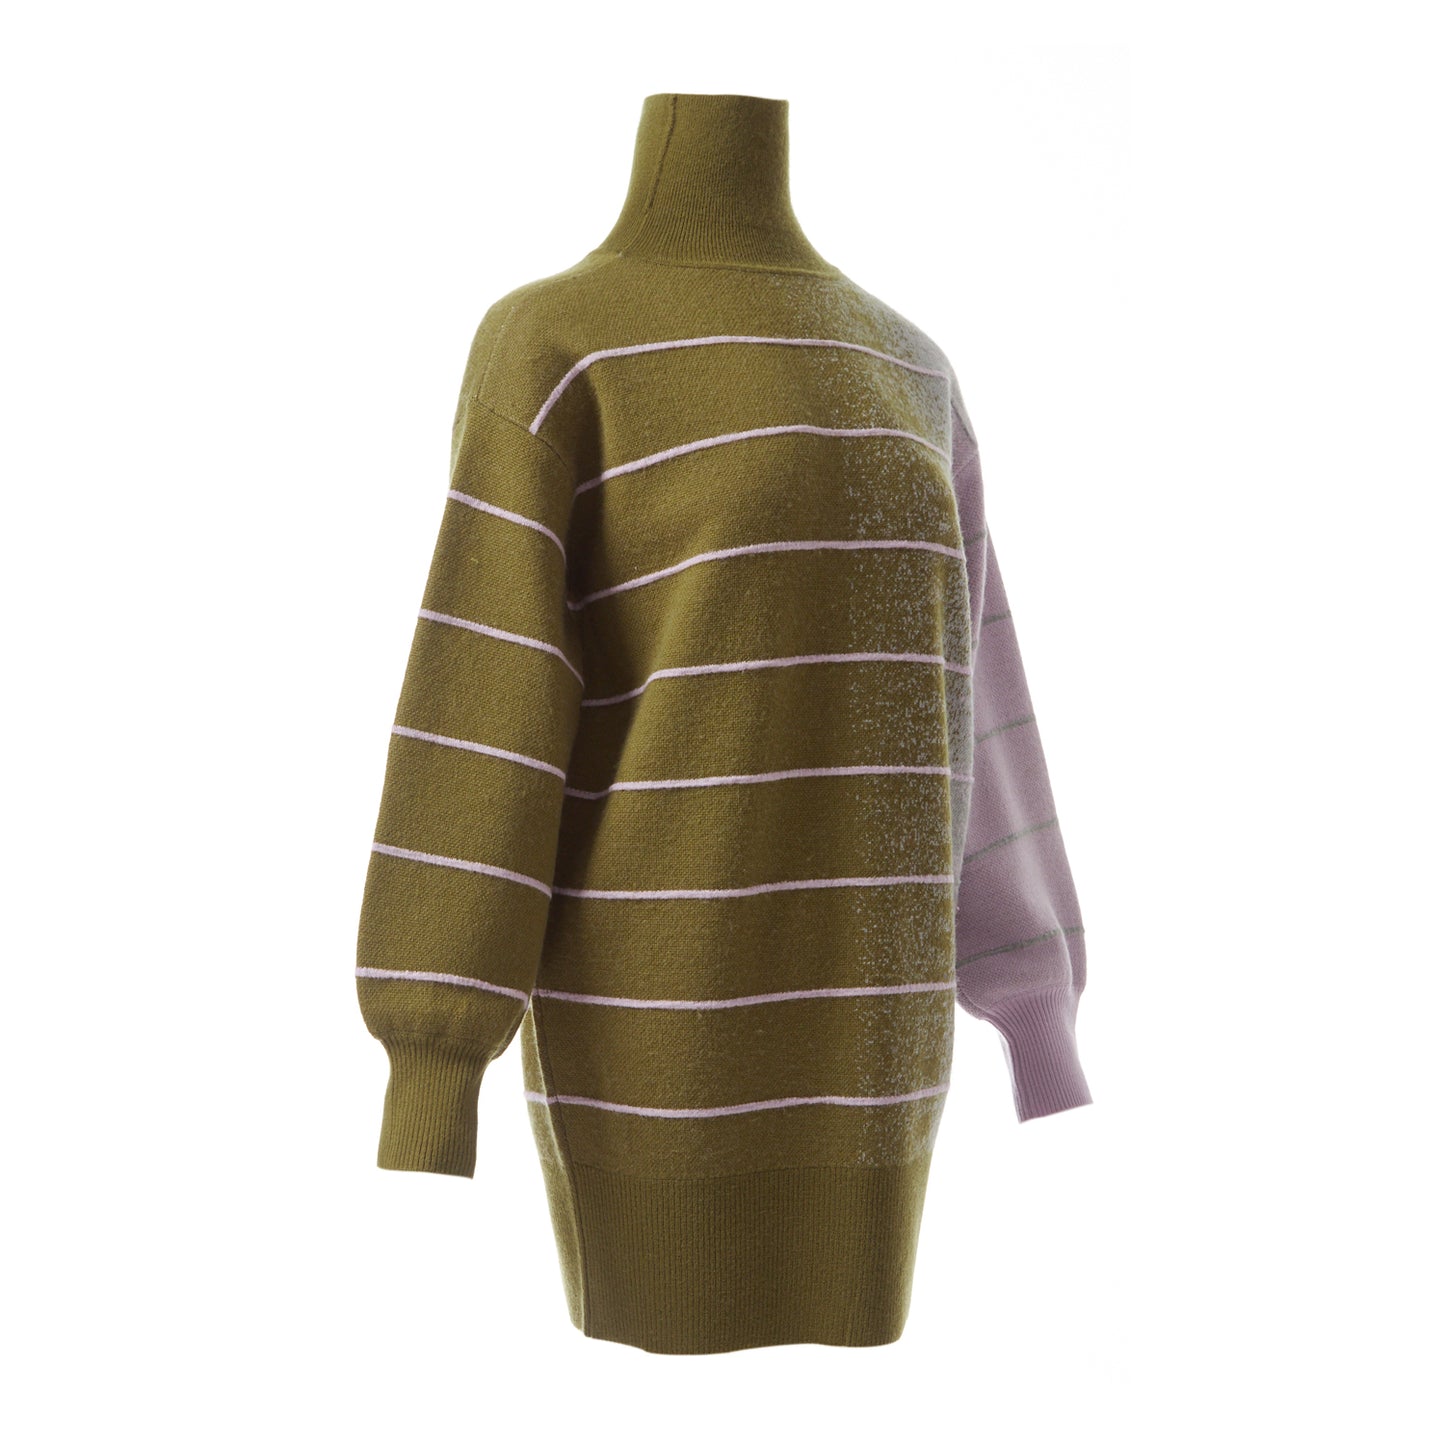 Fully Fashioning Della Ottoman/ Jacquard Knit Sweater Dress